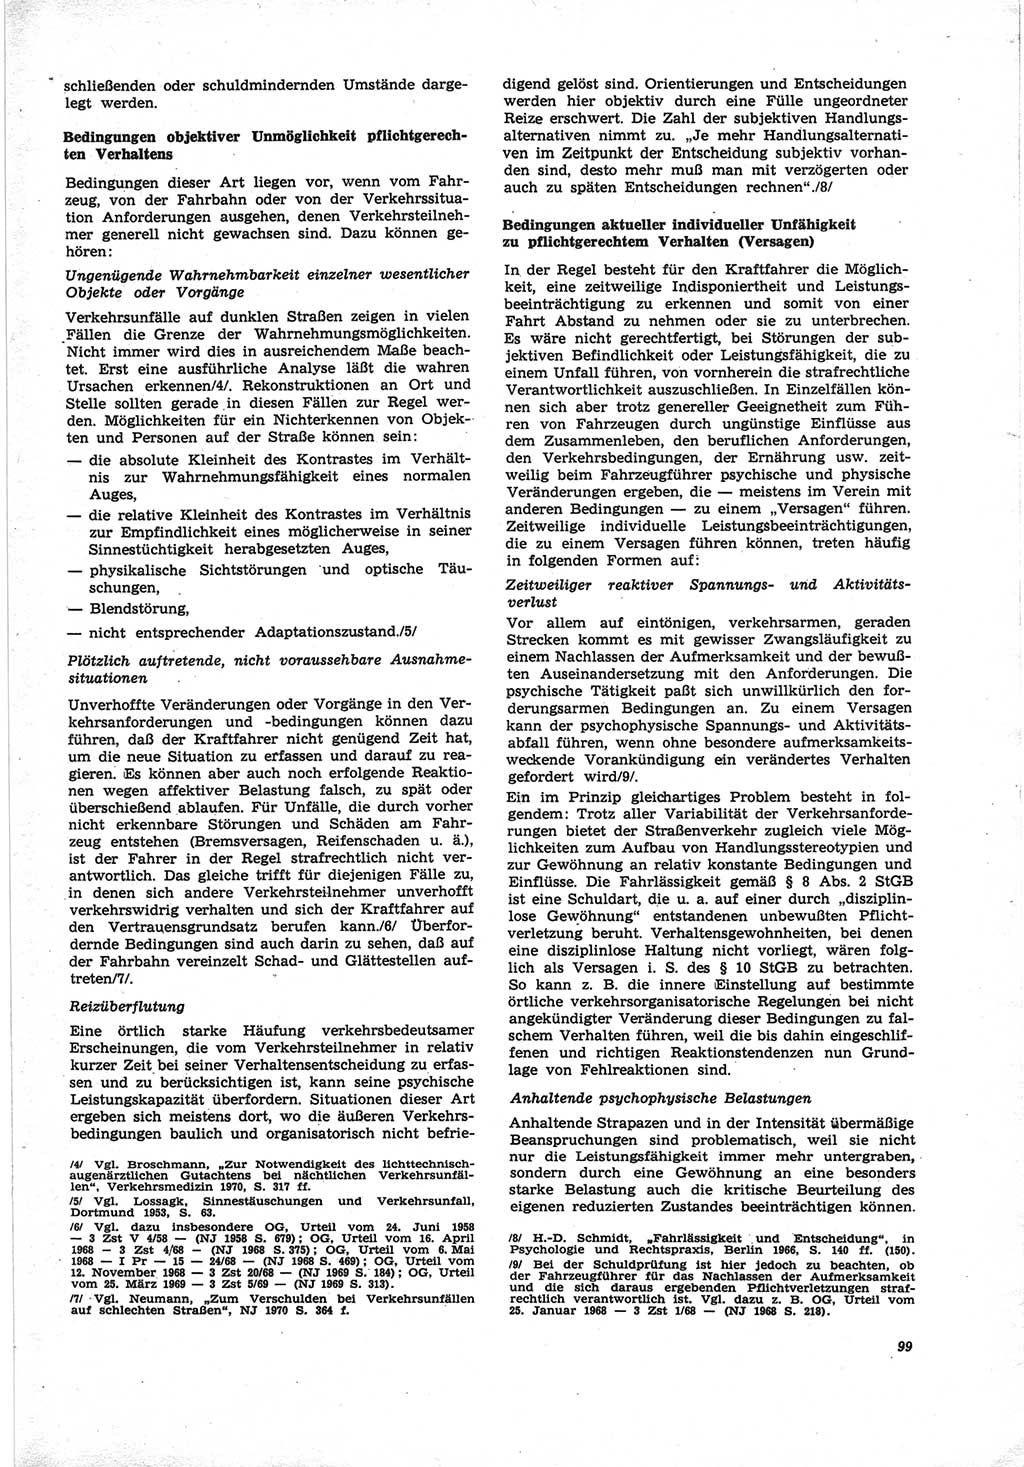 Neue Justiz (NJ), Zeitschrift für Recht und Rechtswissenschaft [Deutsche Demokratische Republik (DDR)], 25. Jahrgang 1971, Seite 99 (NJ DDR 1971, S. 99)